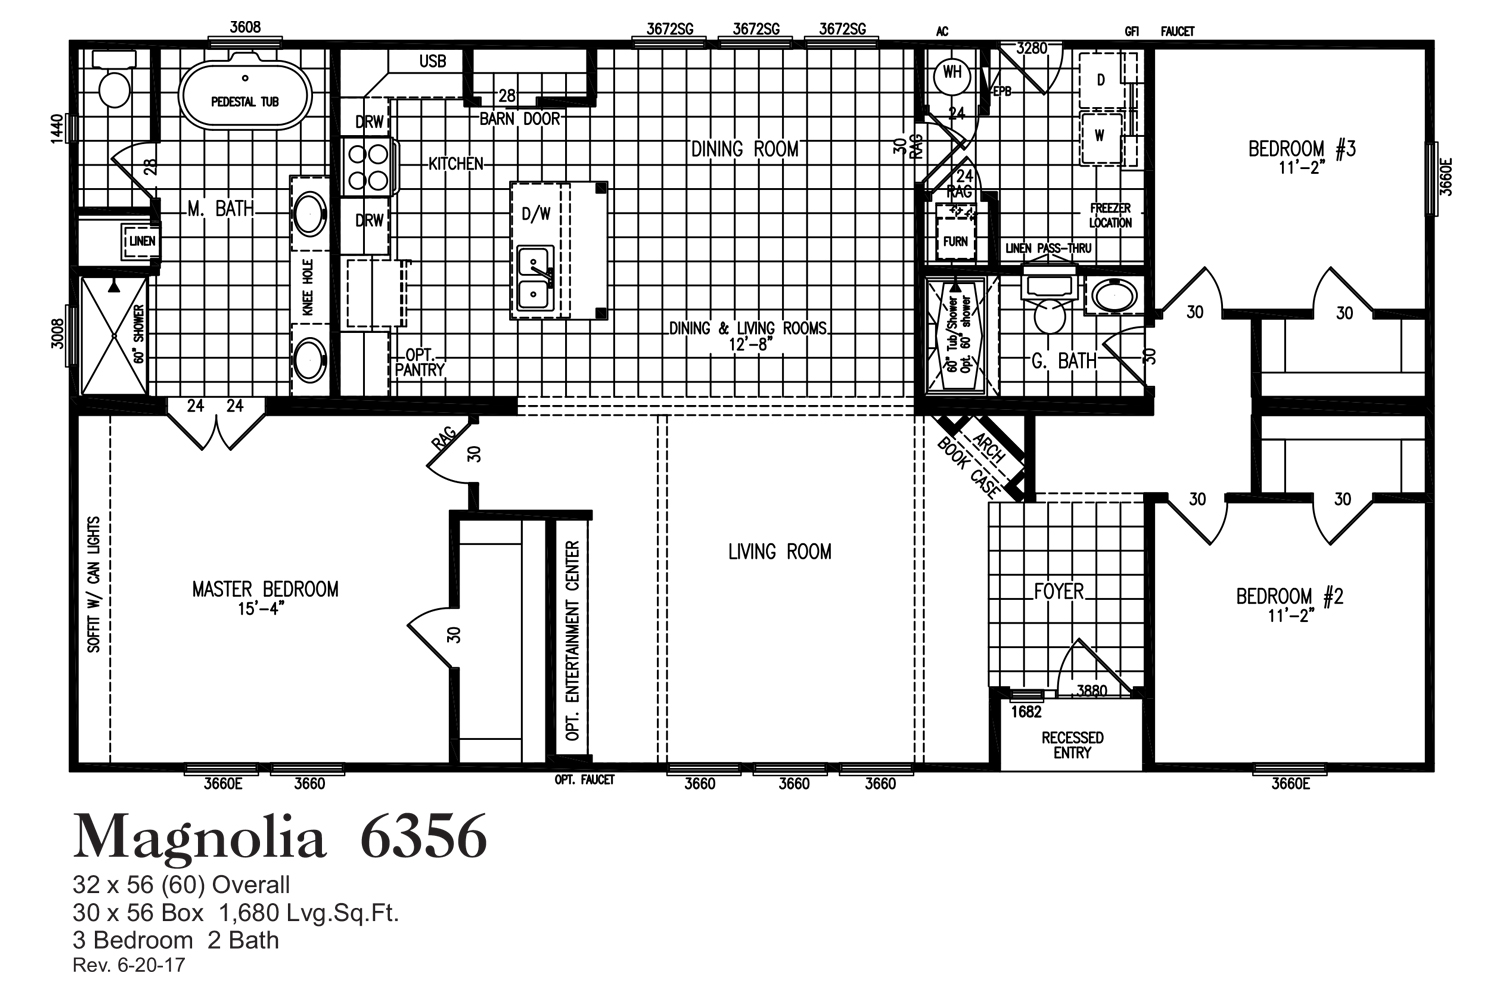 Magnolia 6356 Floorplan